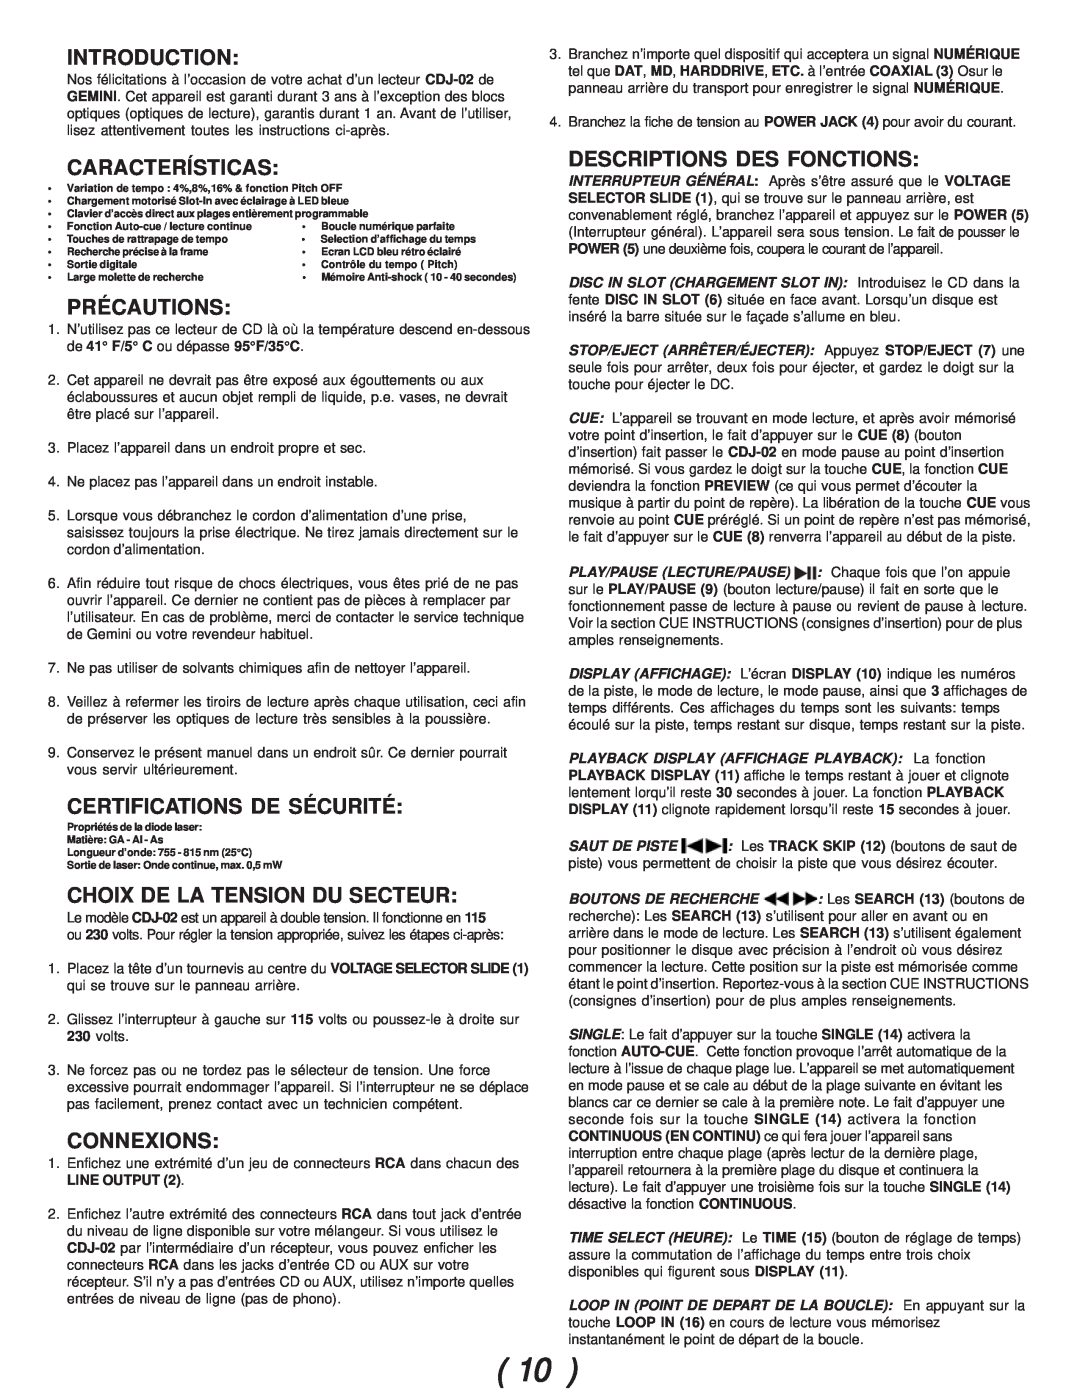 Gemini CDJ-02 manual Características, Précautions, Certifications De Sécurité, Choix De La Tension Du Secteur, Connexions 